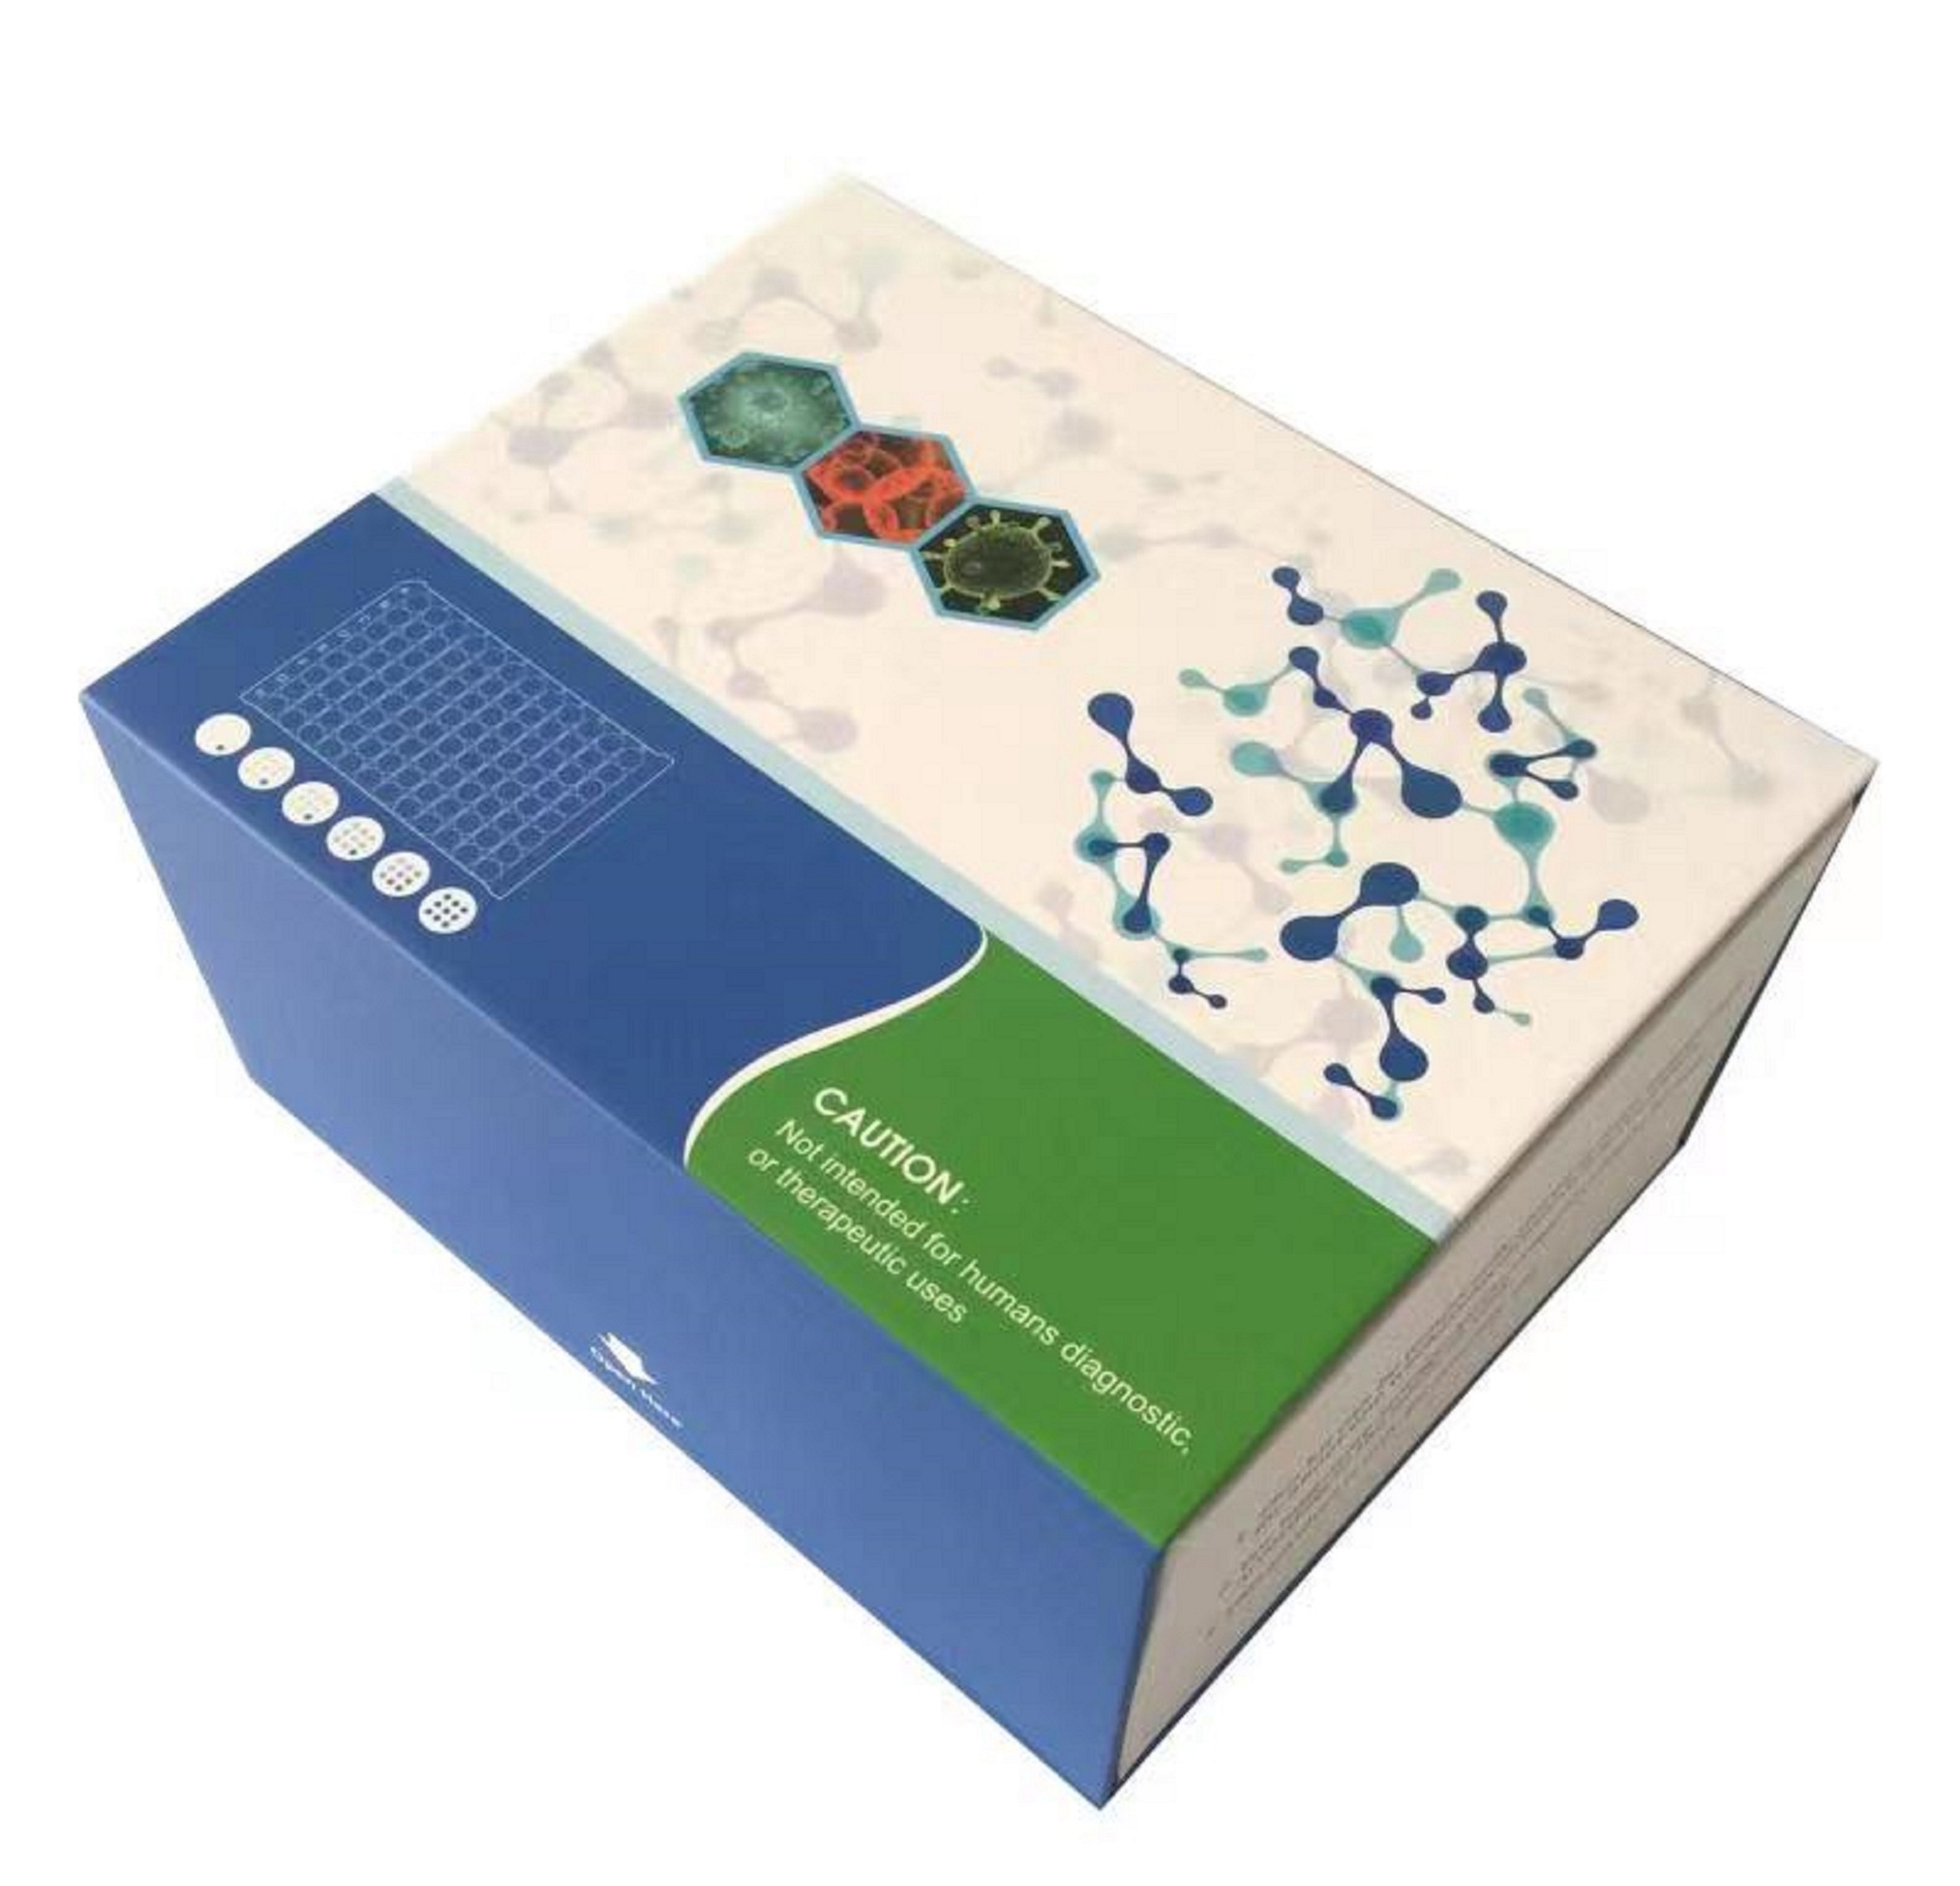 病毒DNA/RNA提取试剂盒